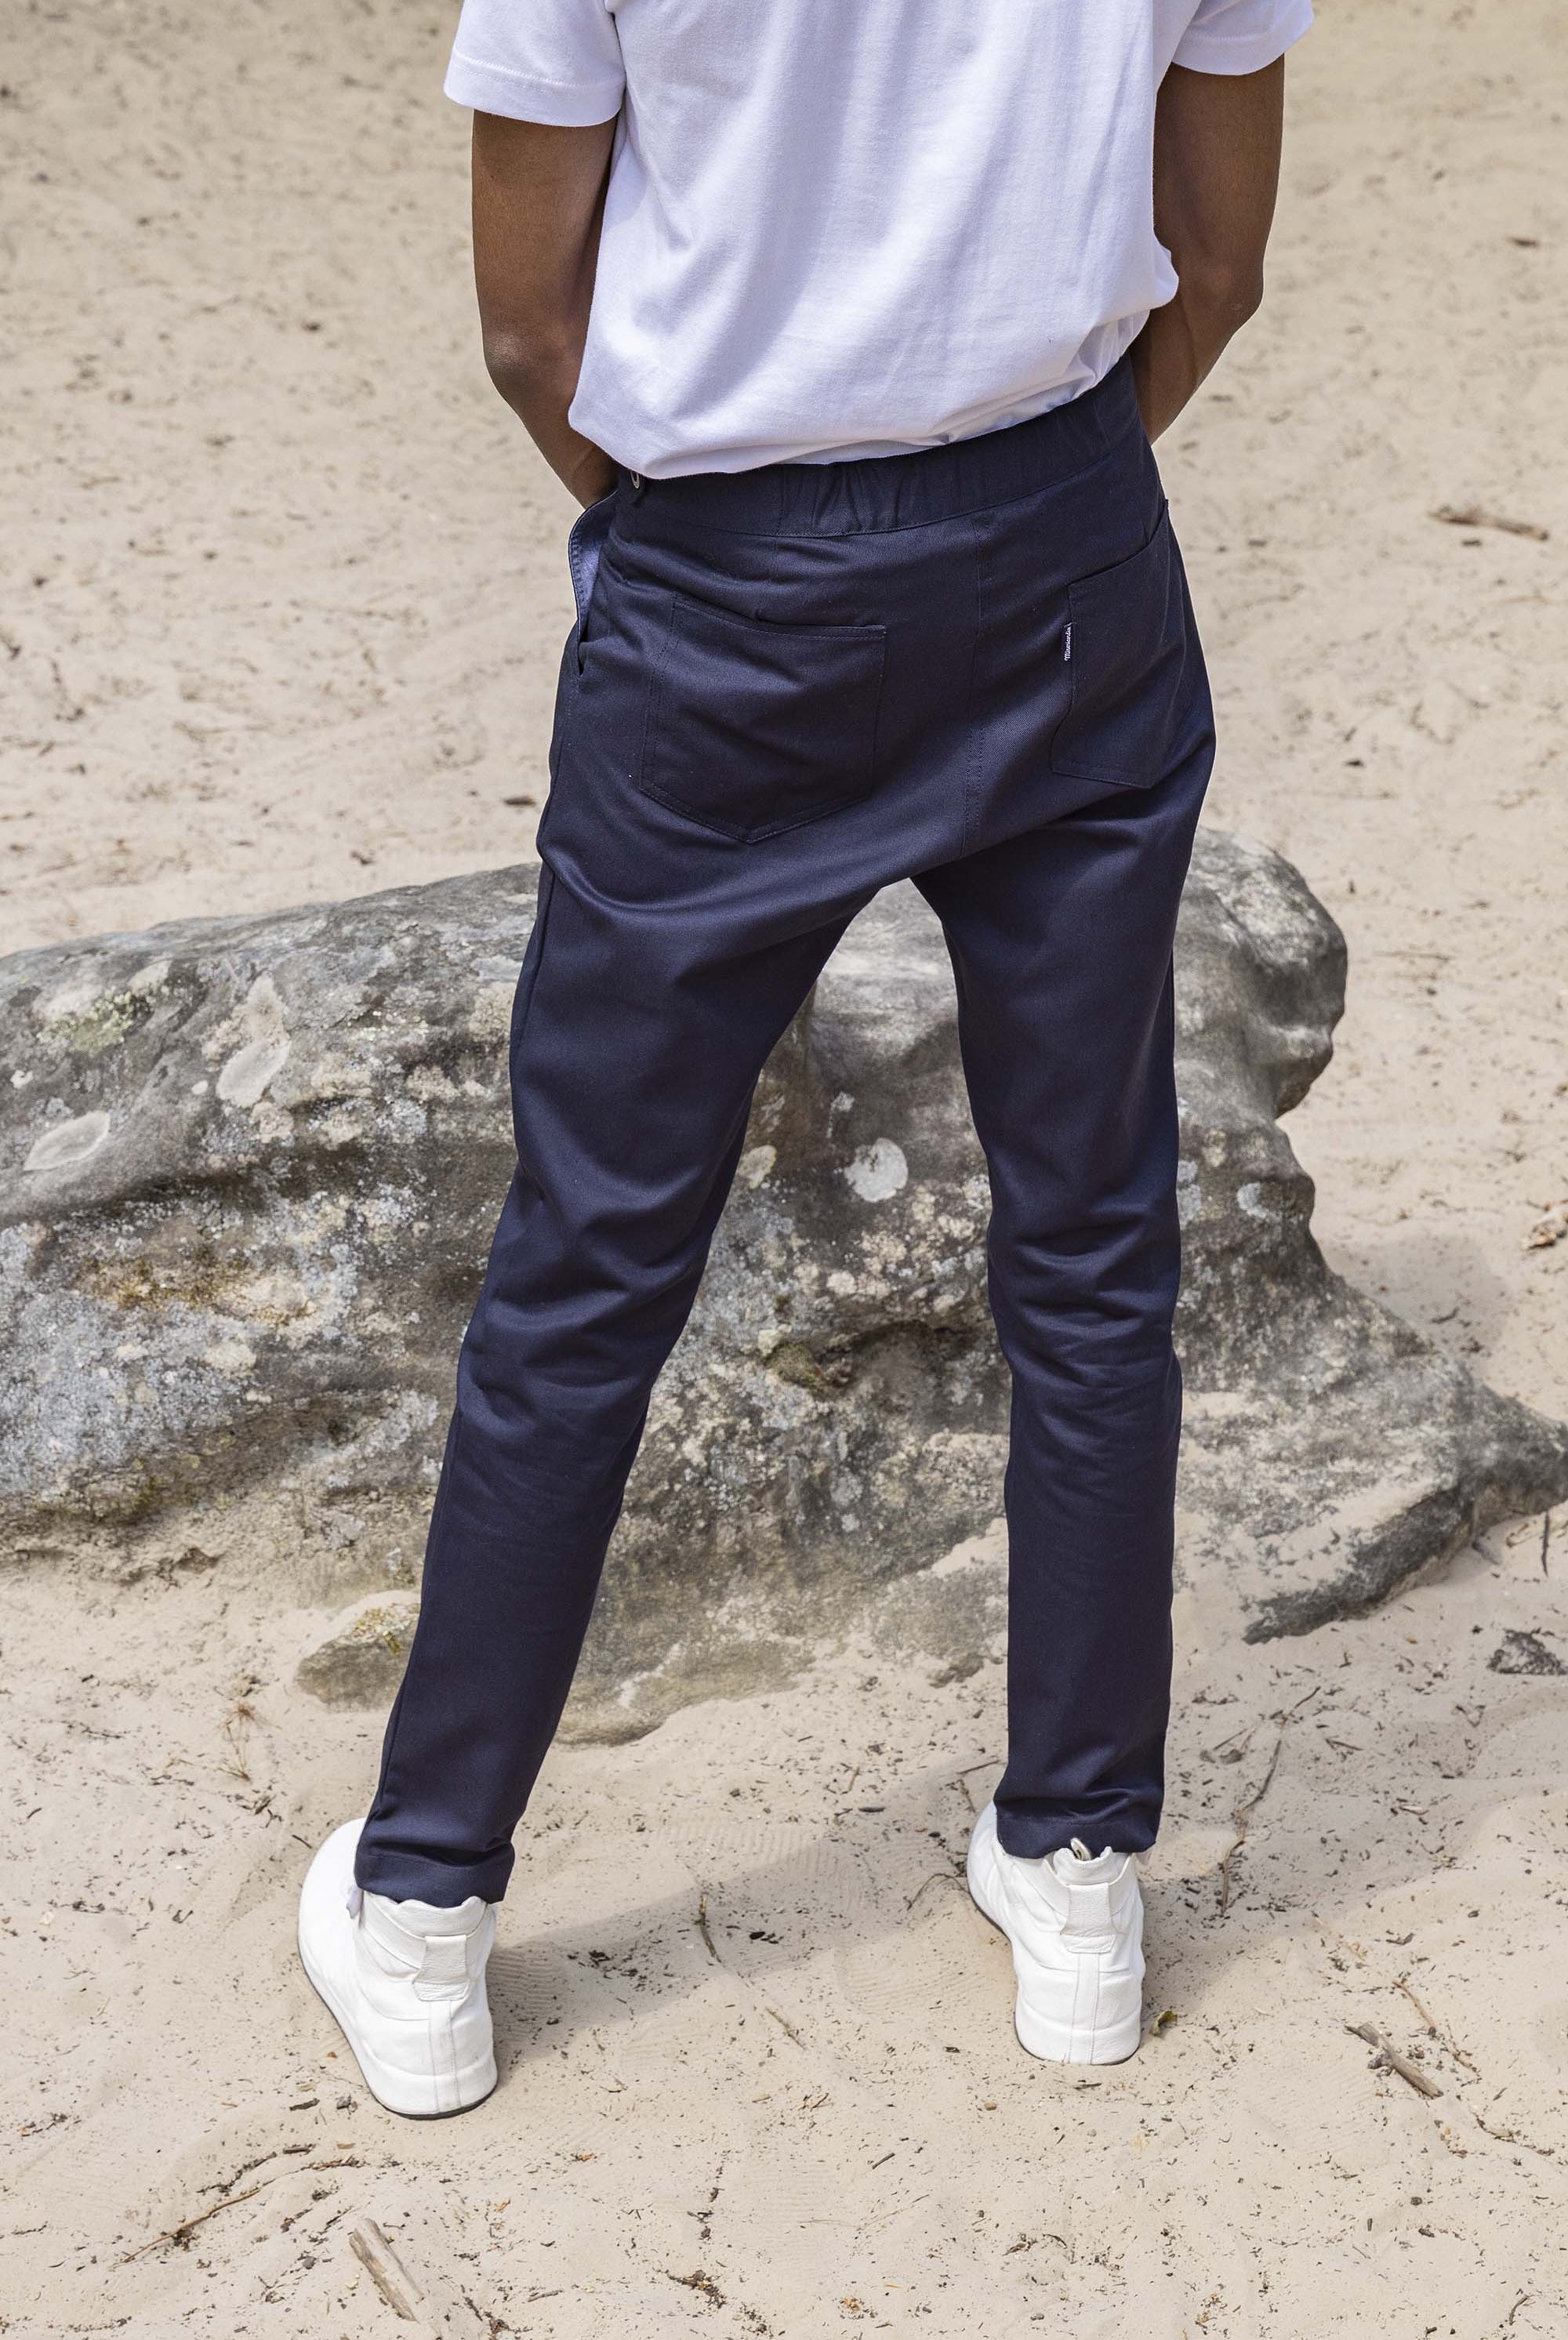 Pantalon Caiman Bleu Marine coupe aisée et facile à porter, indispensable à la garde-robe masculine